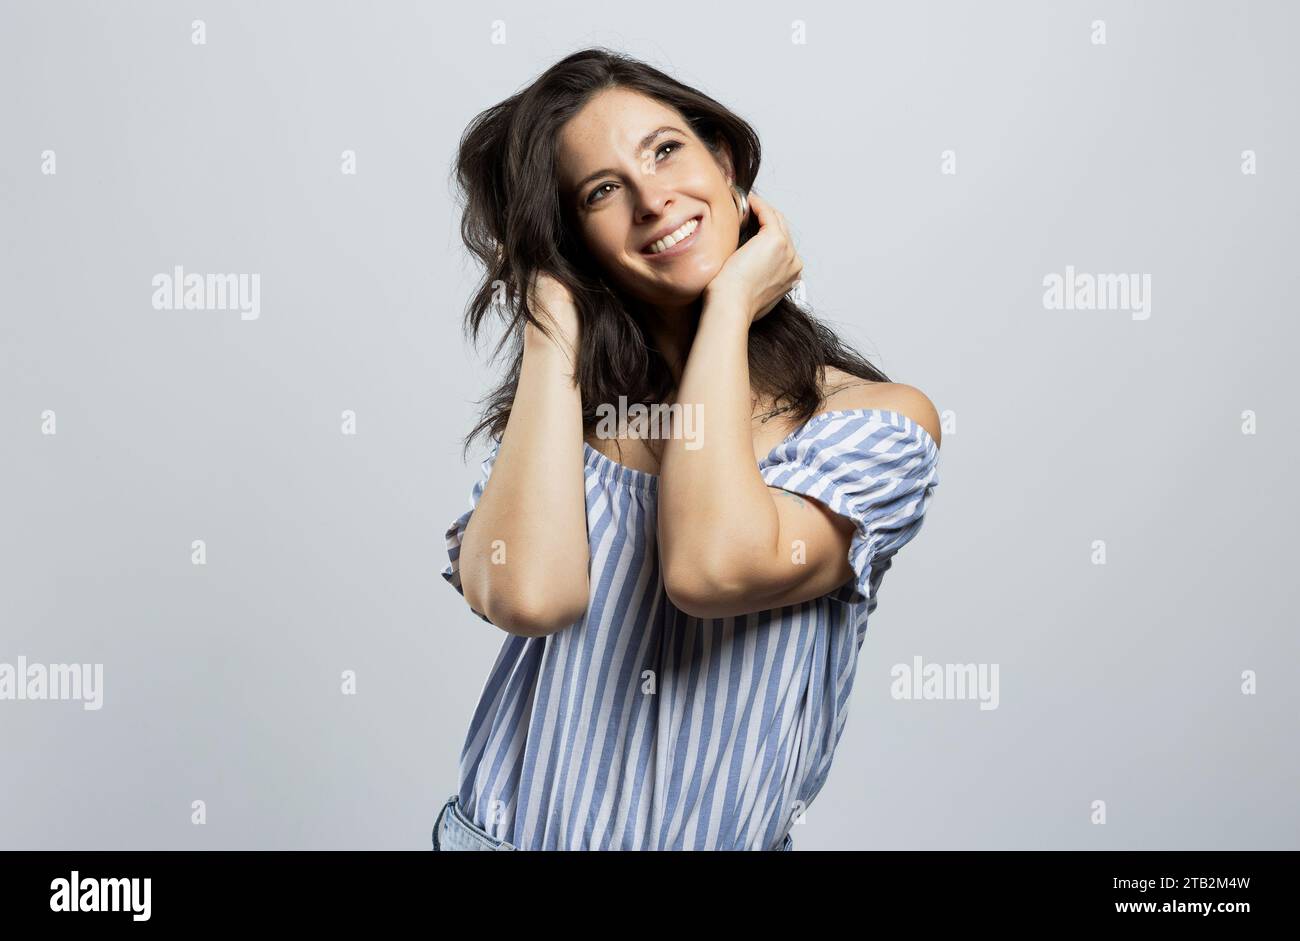 Bella e sorridente donna bruna che guarda in alto, isolata su sfondo grigio Foto Stock